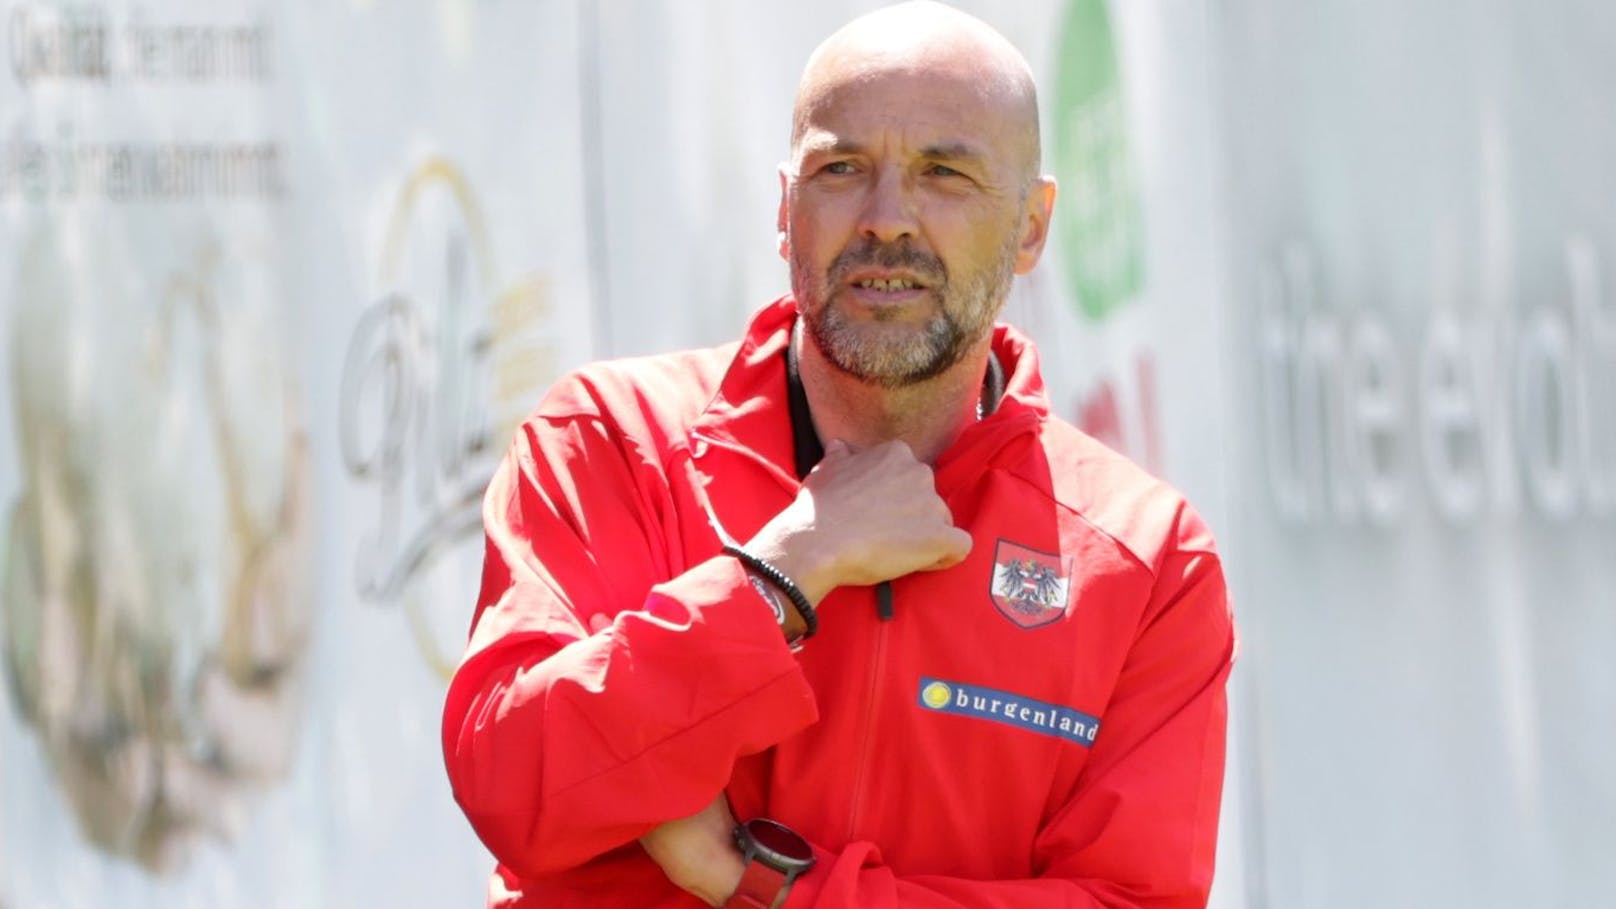 ÖFB-Coach gefeuert: Spielerinnen verlassen Camp